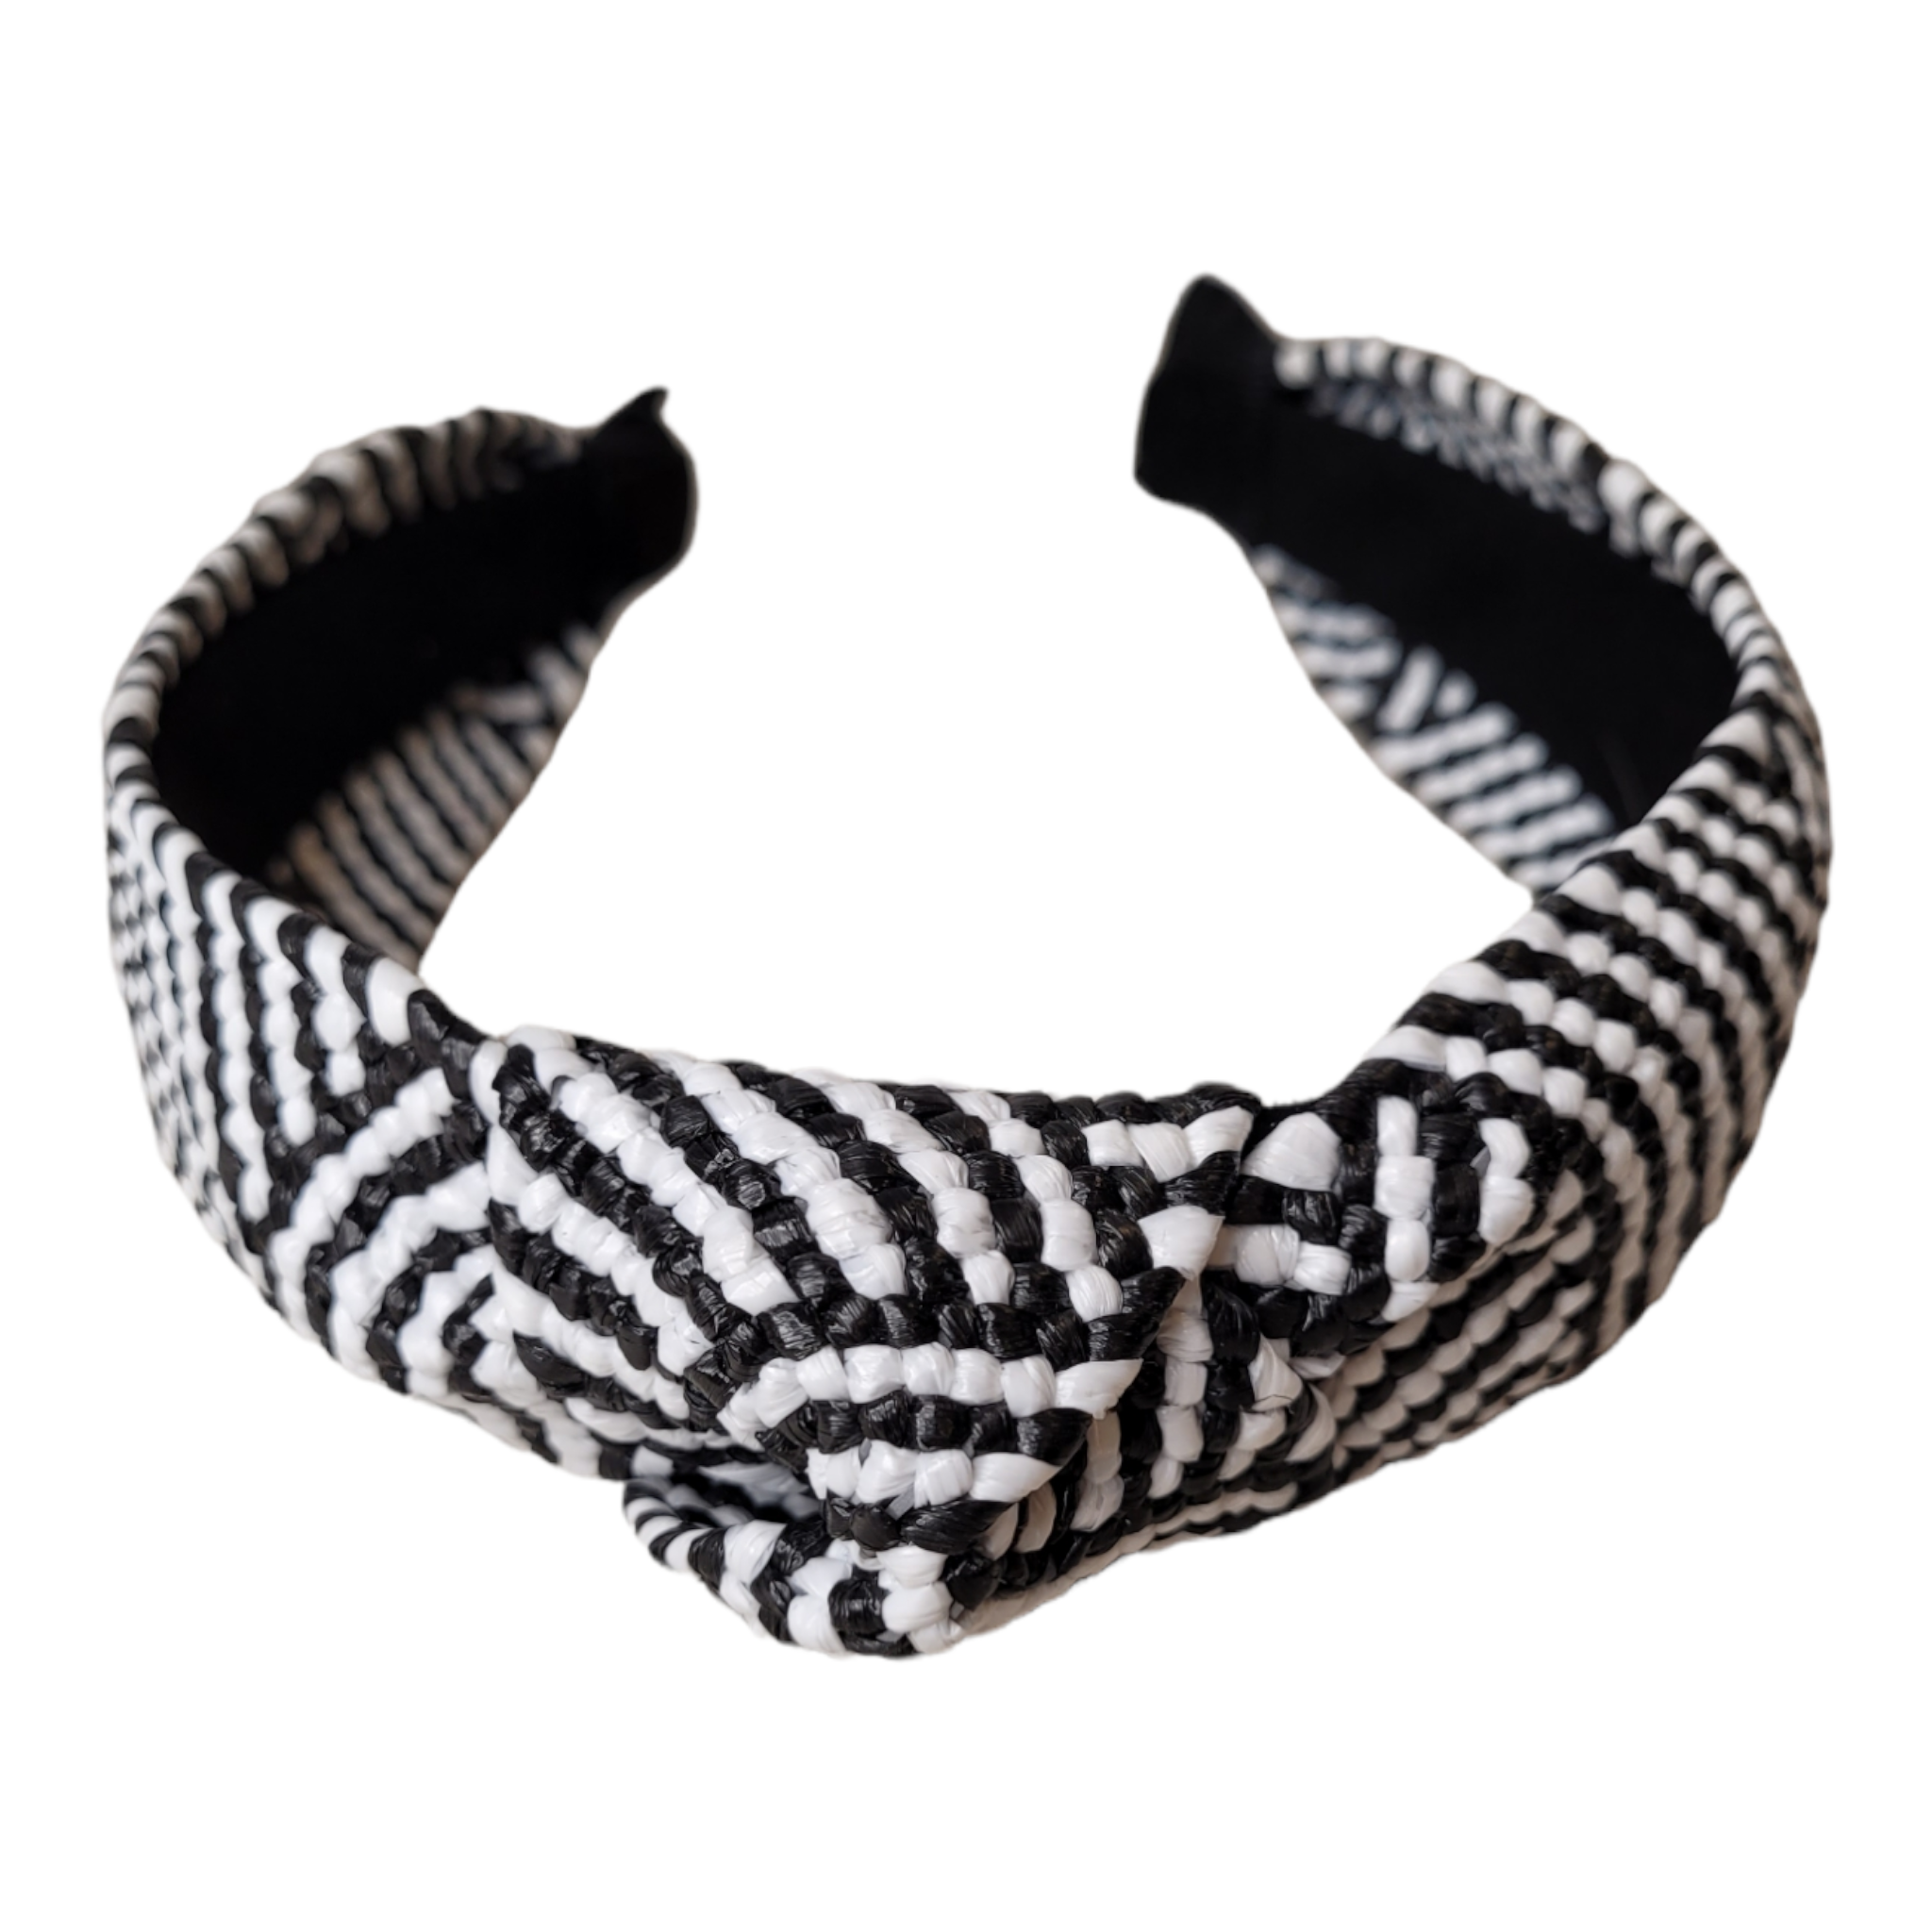 Black & White Raffia Top Knot Headband-Accessories-louisgeorgeboutique-LouisGeorge Boutique, Women’s Fashion Boutique Located in Trussville, Alabama